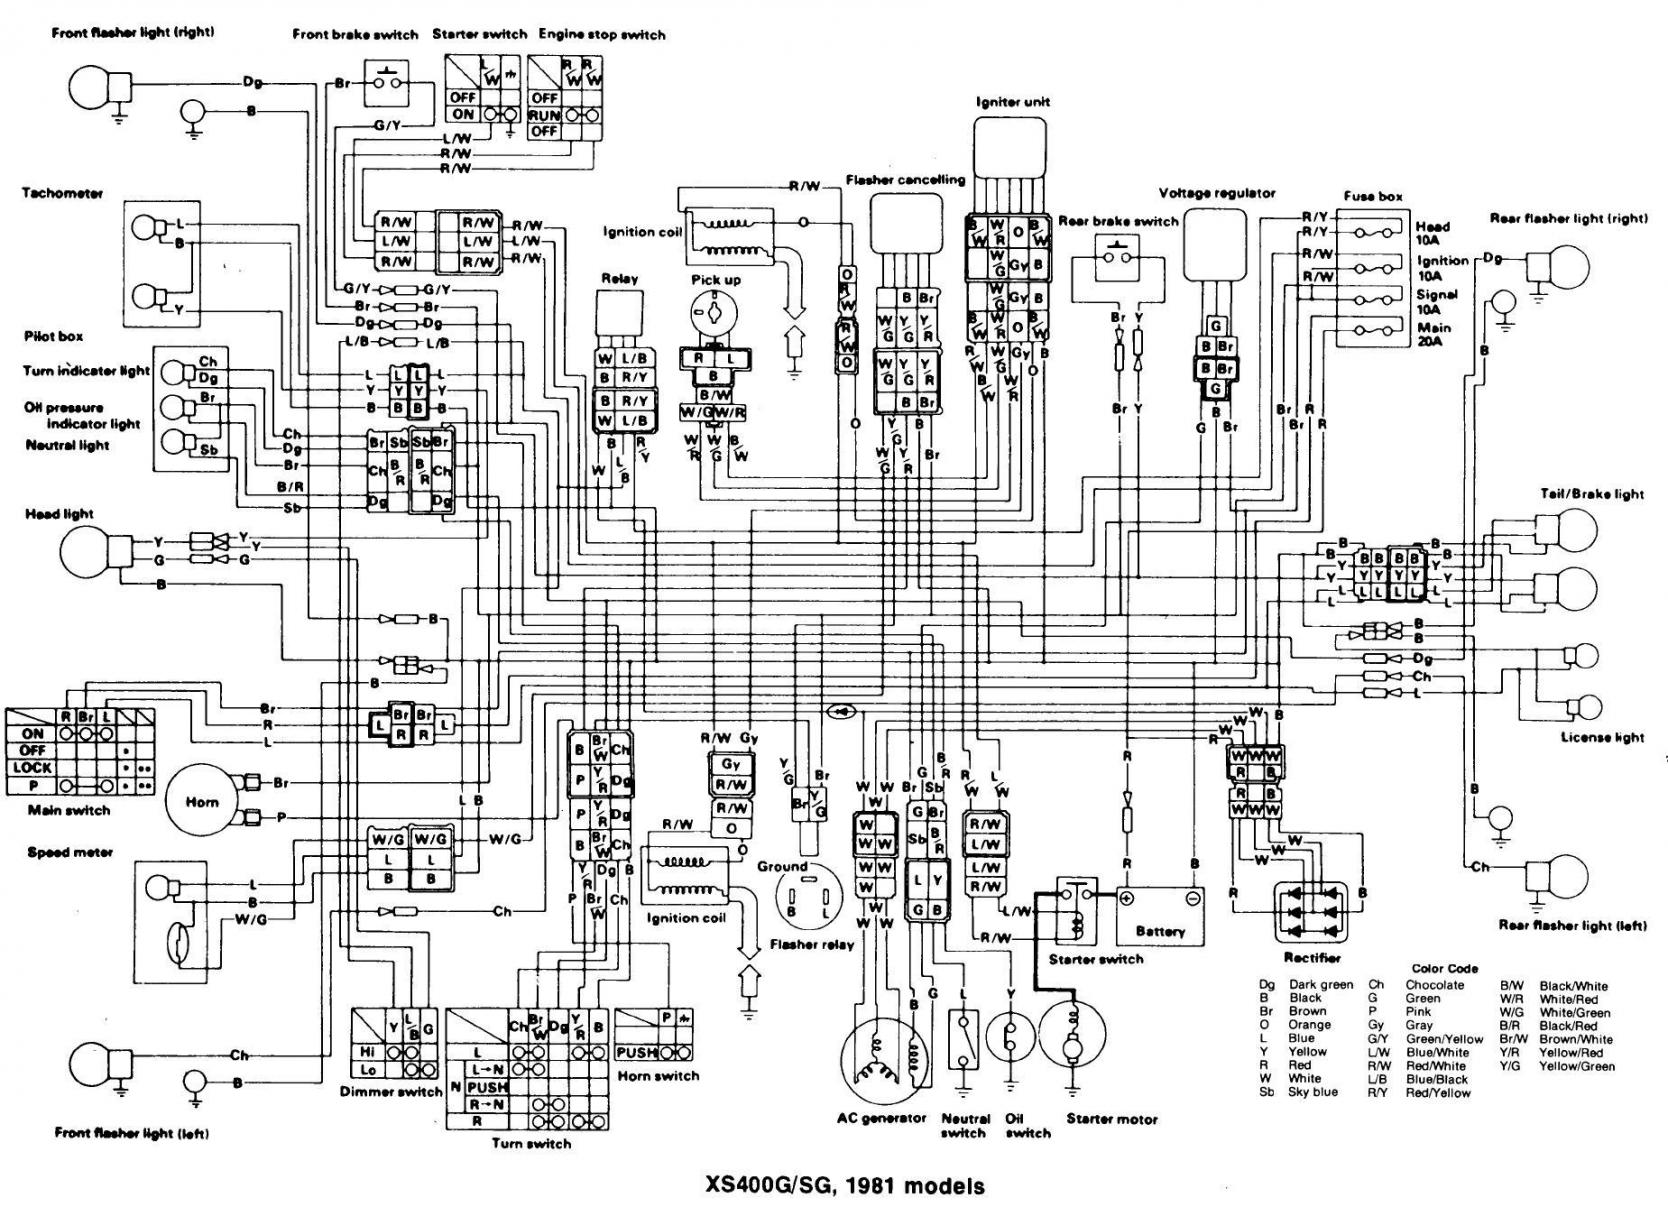 hisun sector 400 wiring diagram